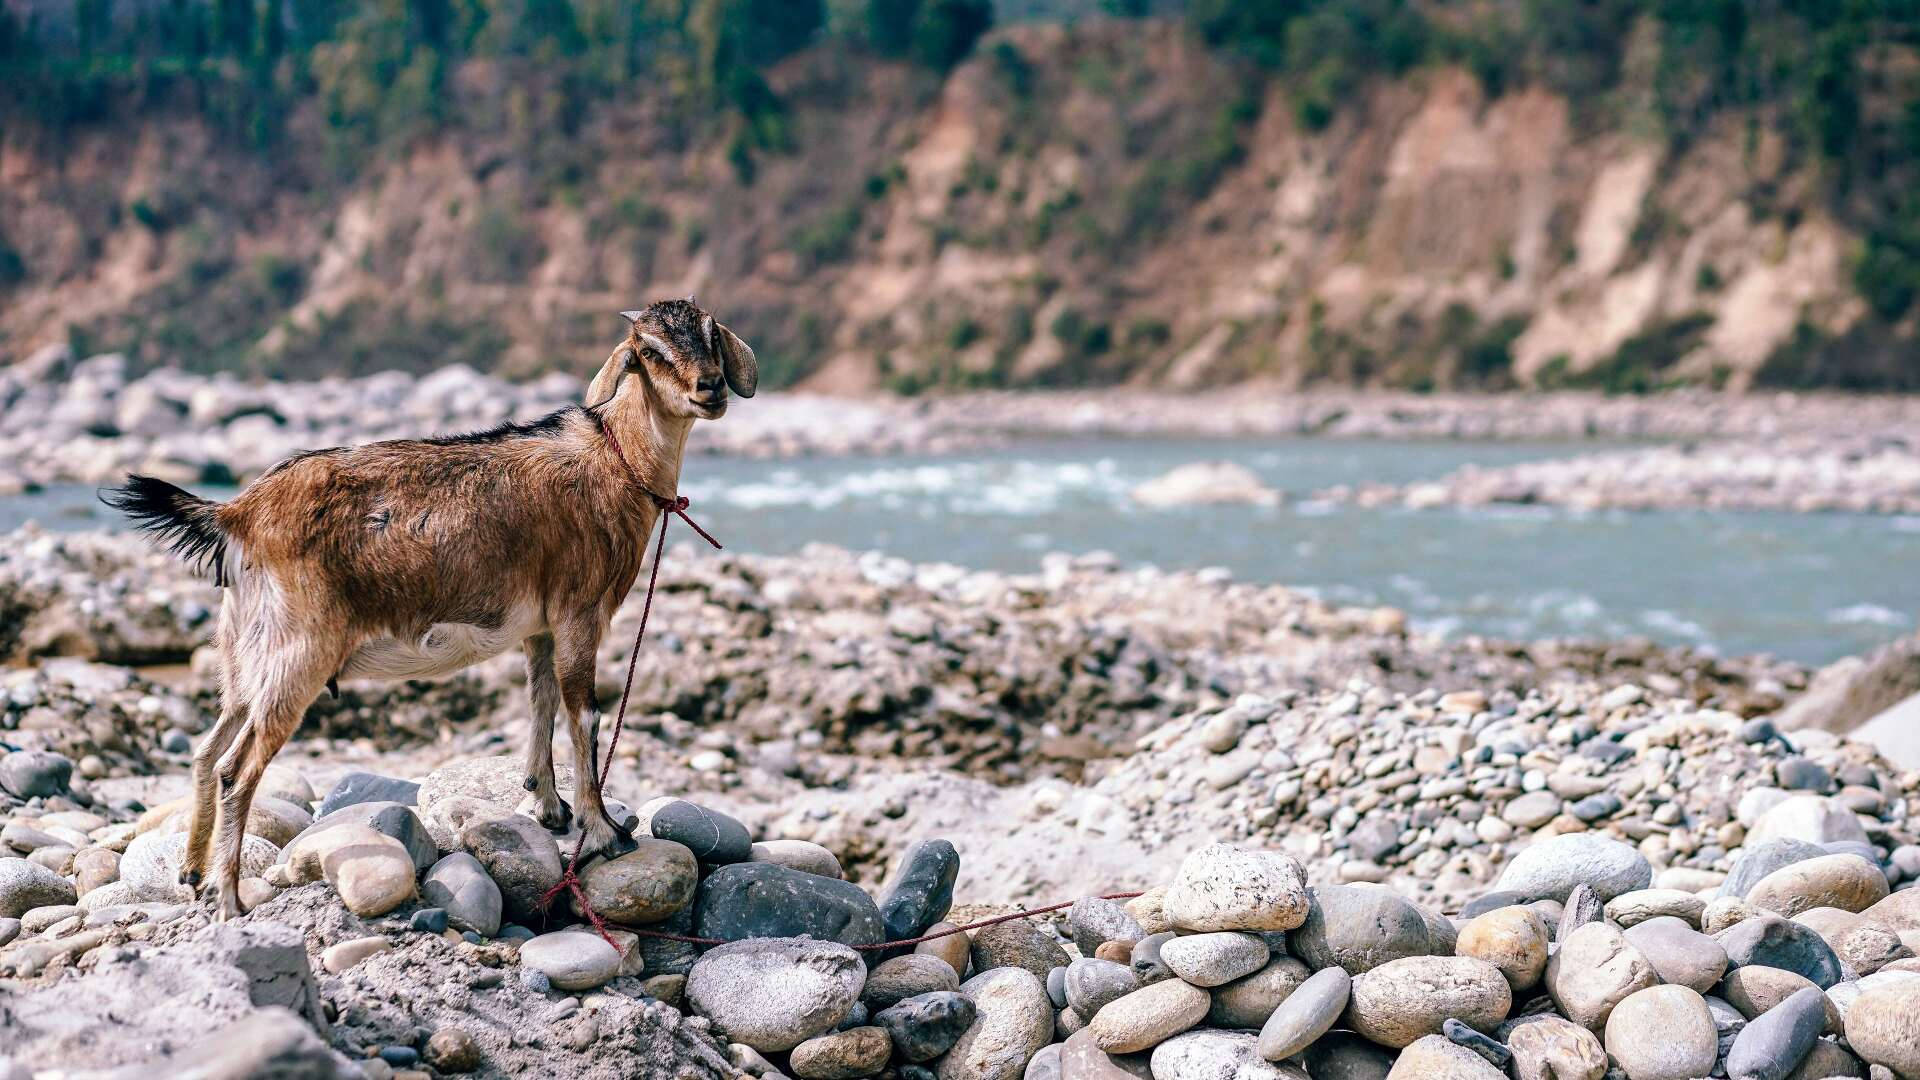 Caption: Majestic Goat Navigating Rocky Stream Background